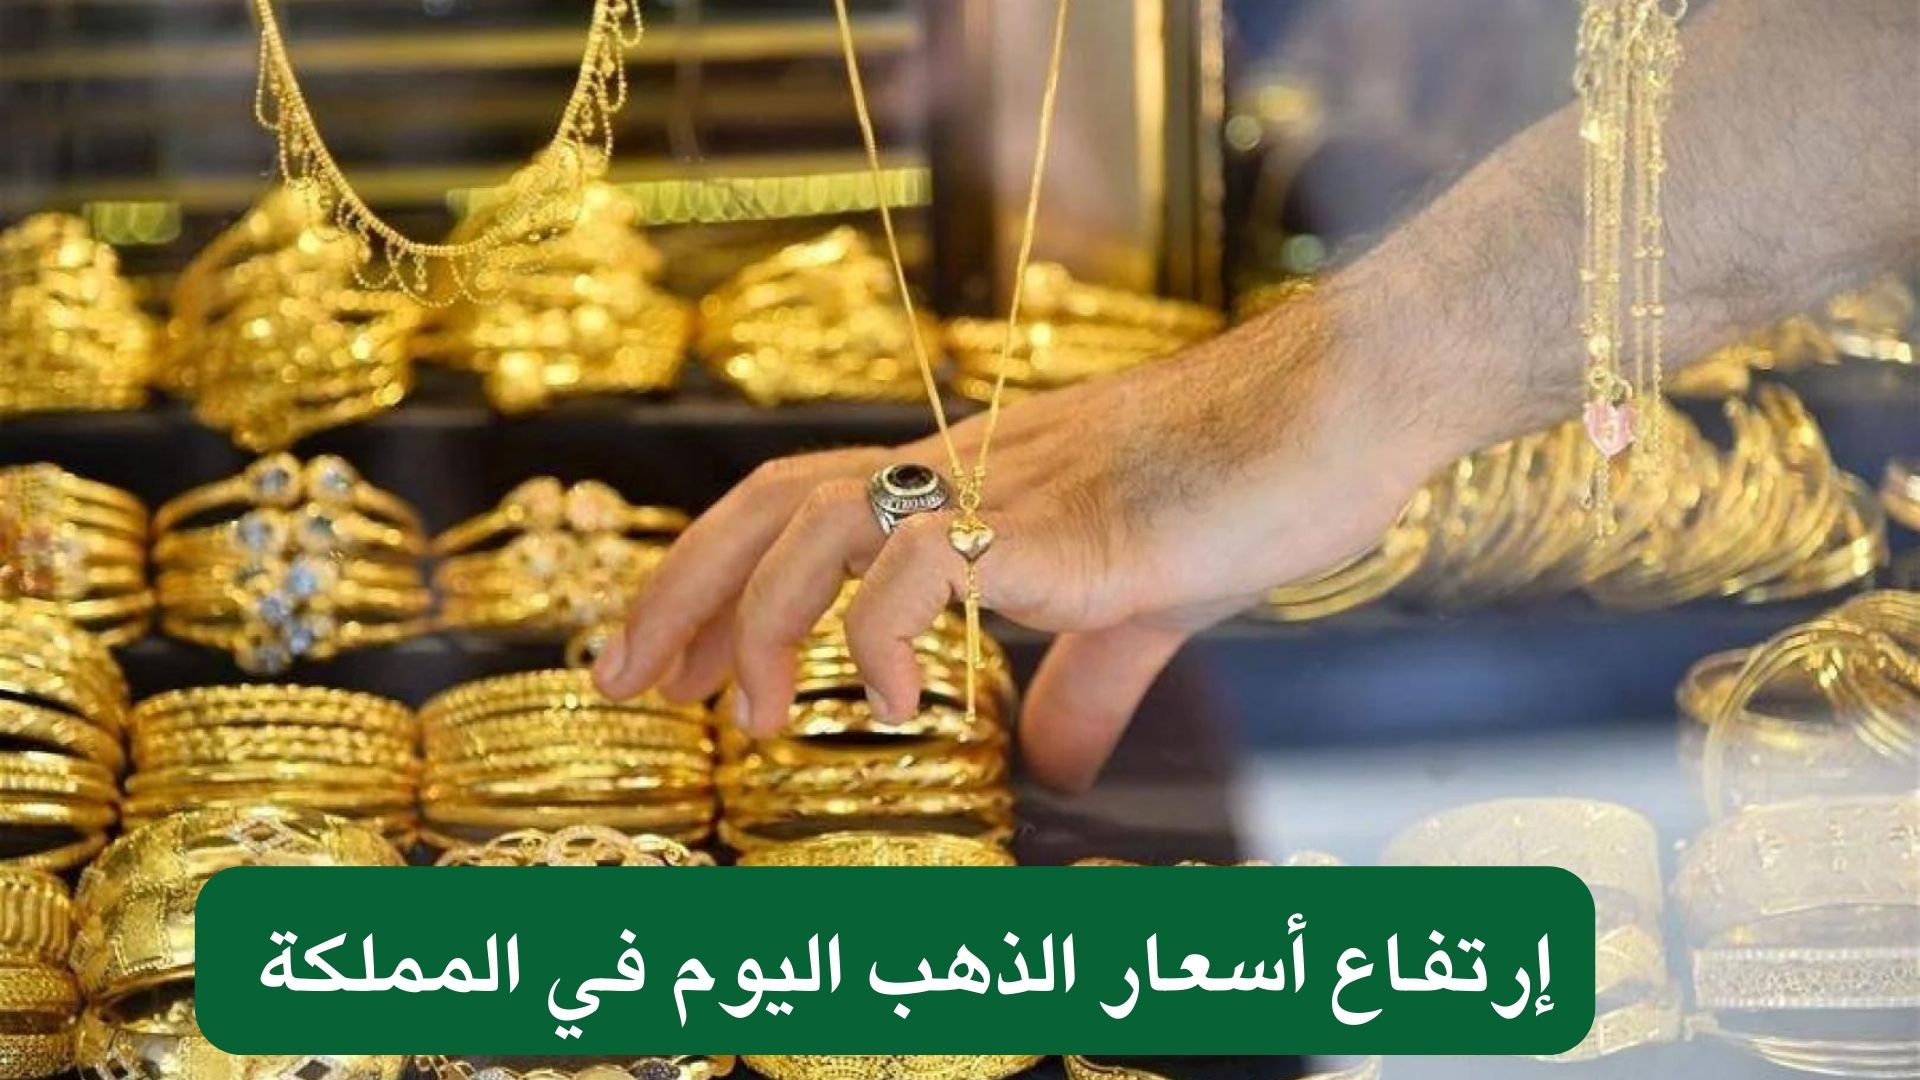 إرتفاع أسعار الذهب اليوم في المملكة 